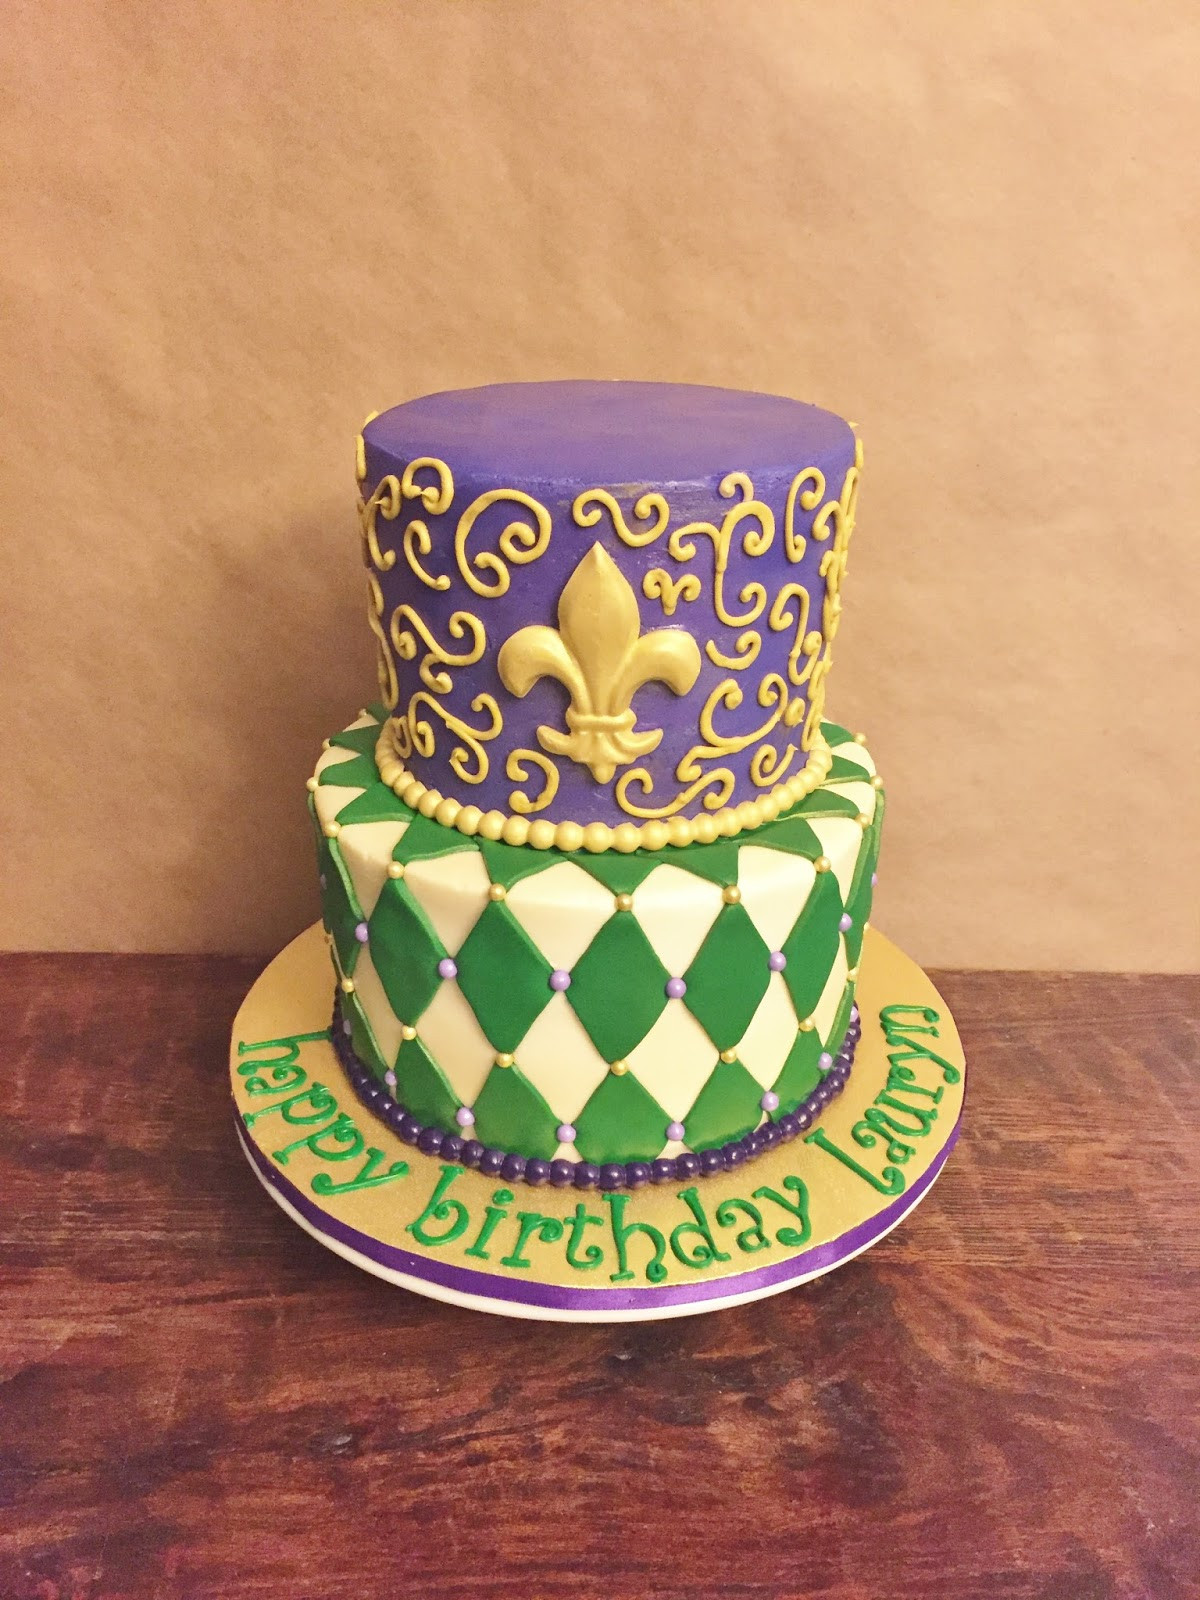 Mardi Gras Birthday Cake
 Cakes by Mindy Mardi Gras Birthday Cake 6" & 8"